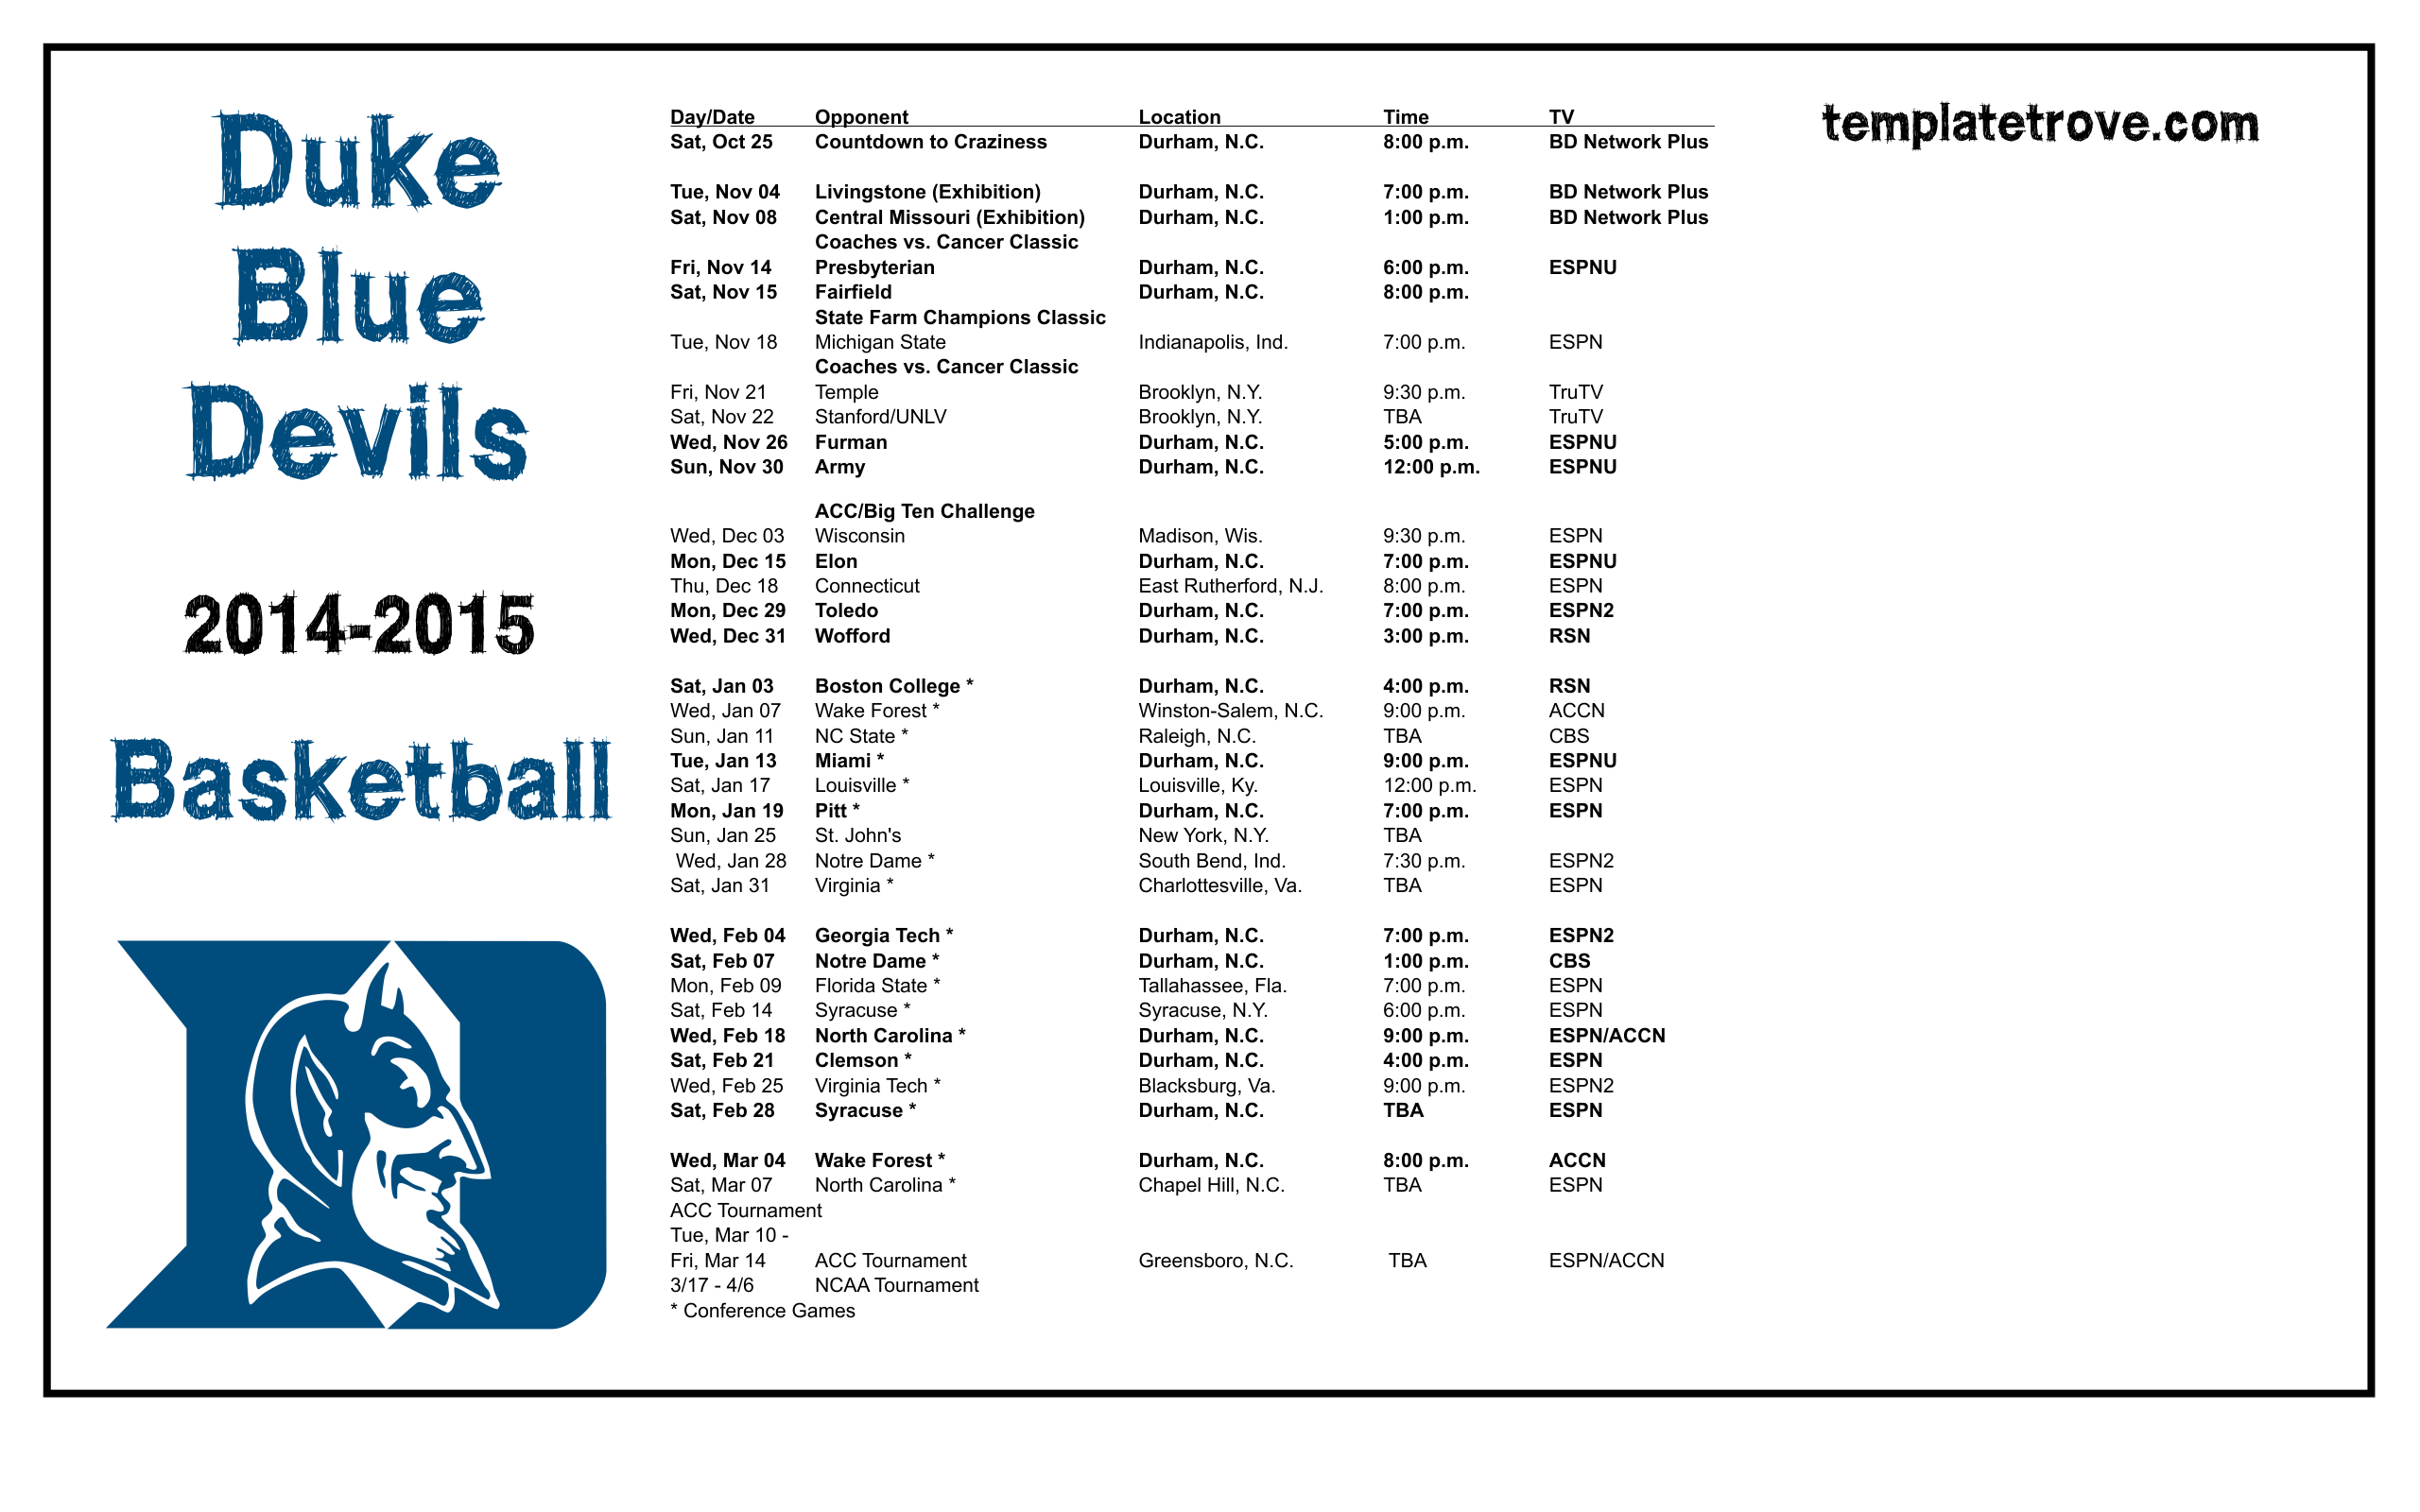 49ers 2015 Schedule Wallpaper